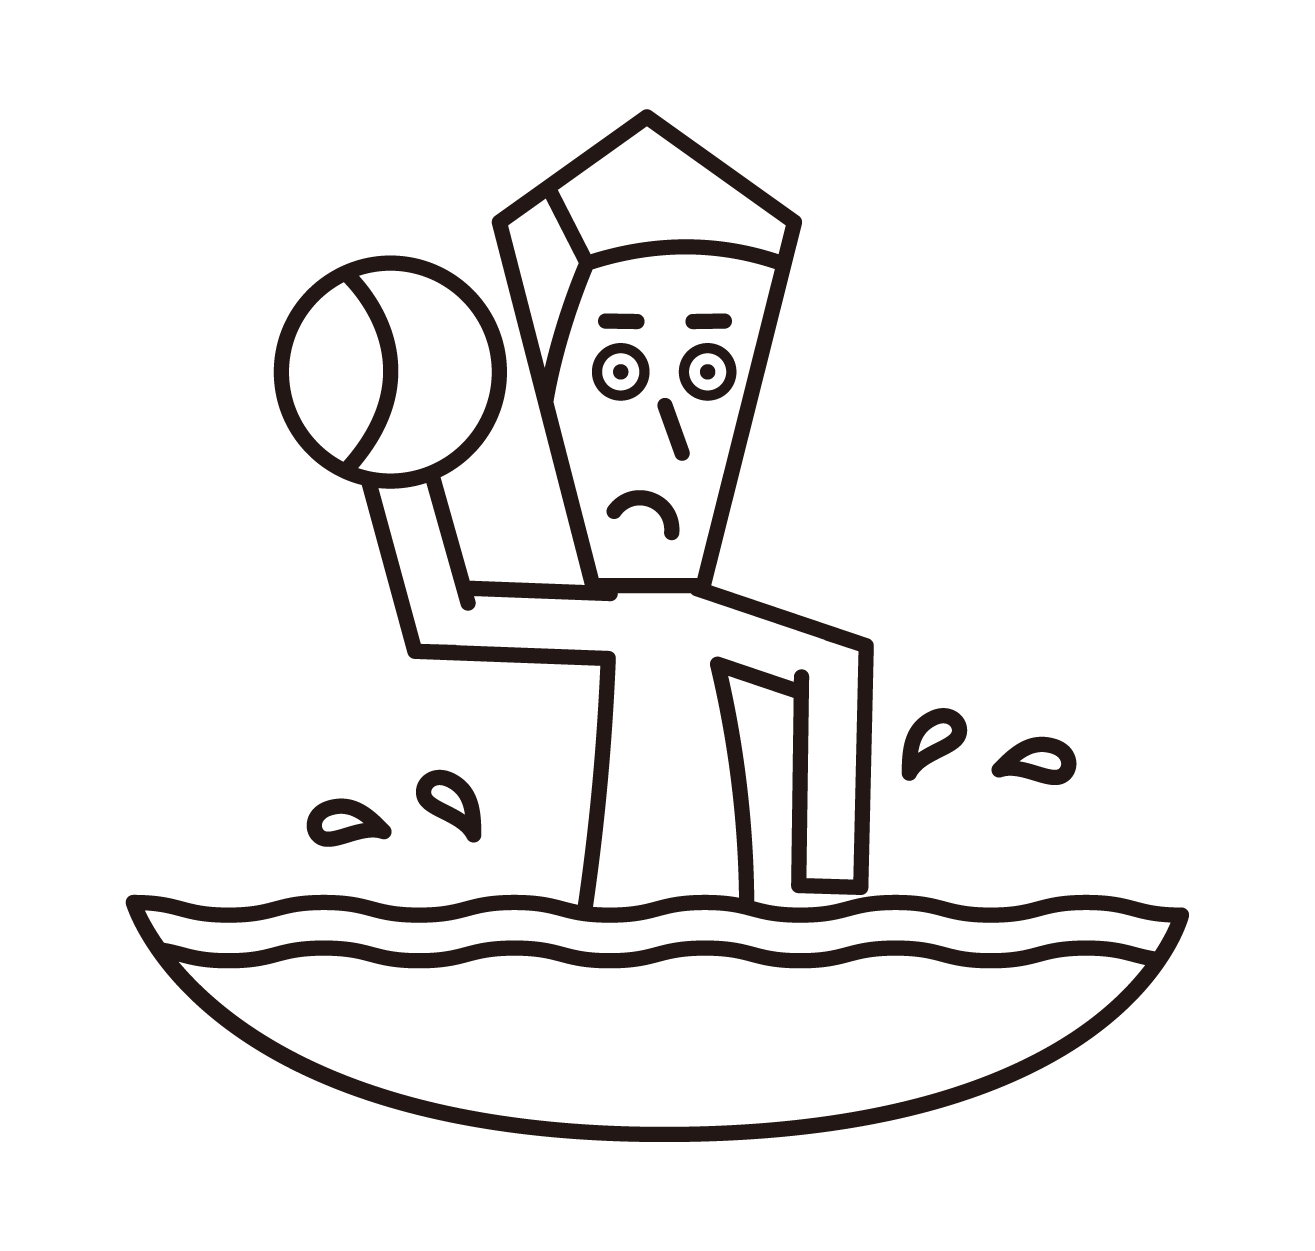 水球運動員（男性）的插圖